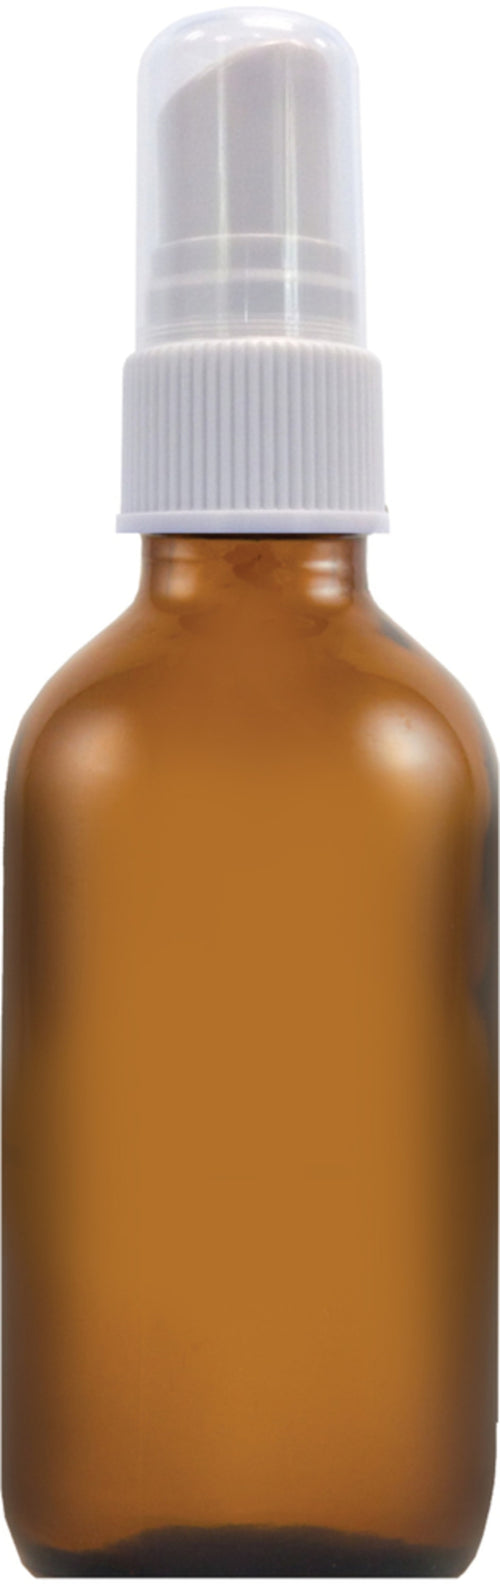 Flacon pulvérisateur, 59 mL (2 oz liq.), verre ambré, flacon pulvérisateur